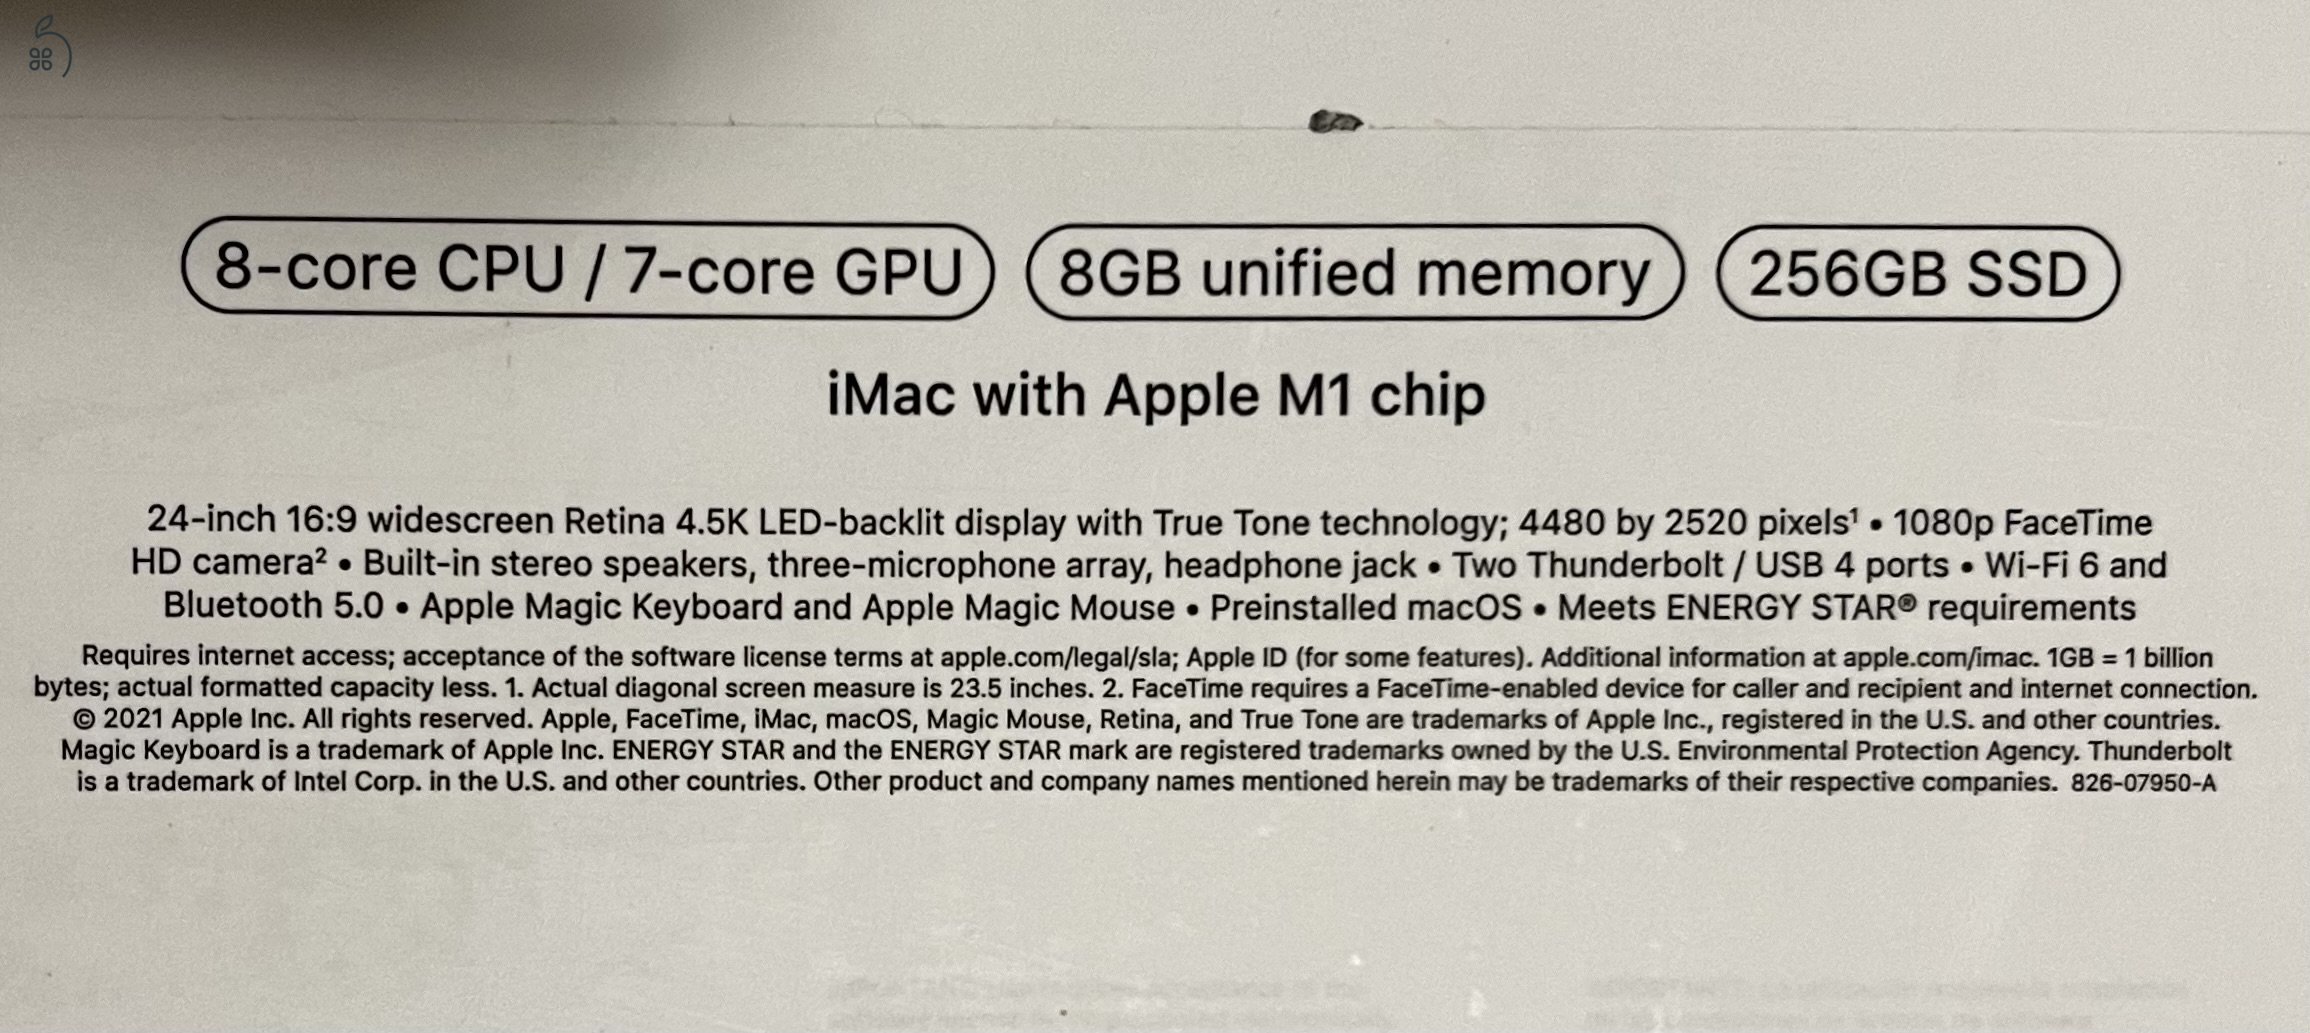 Új állapotban levő M1 chippes iMac